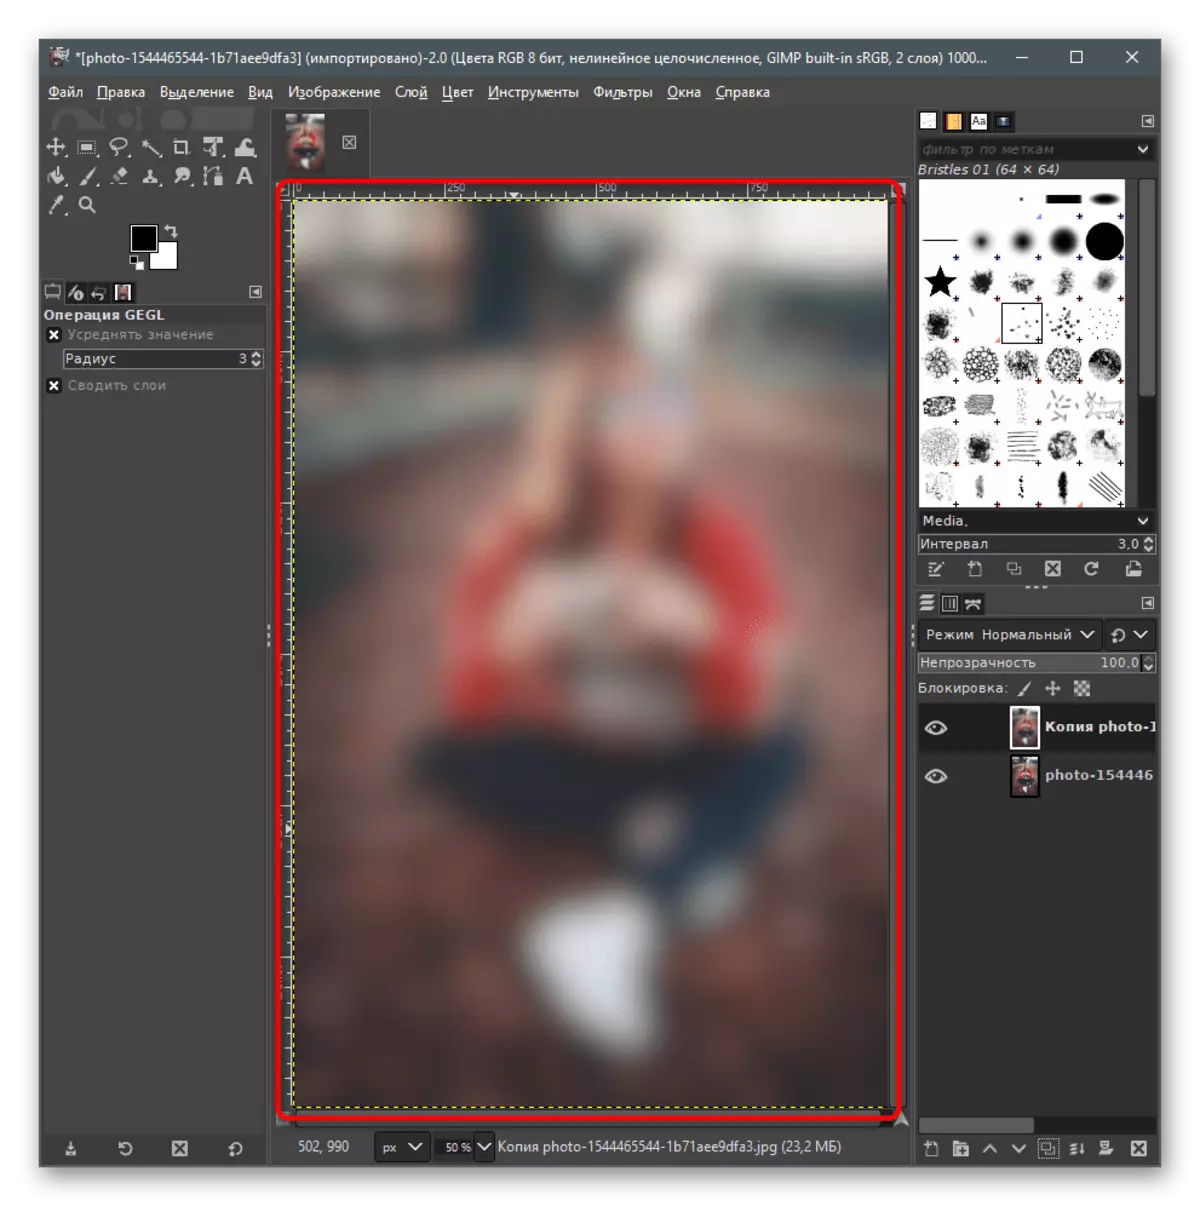 Controllo del risultato del filtro selezionato per sfocare lo sfondo posteriore nella foto in Gimp